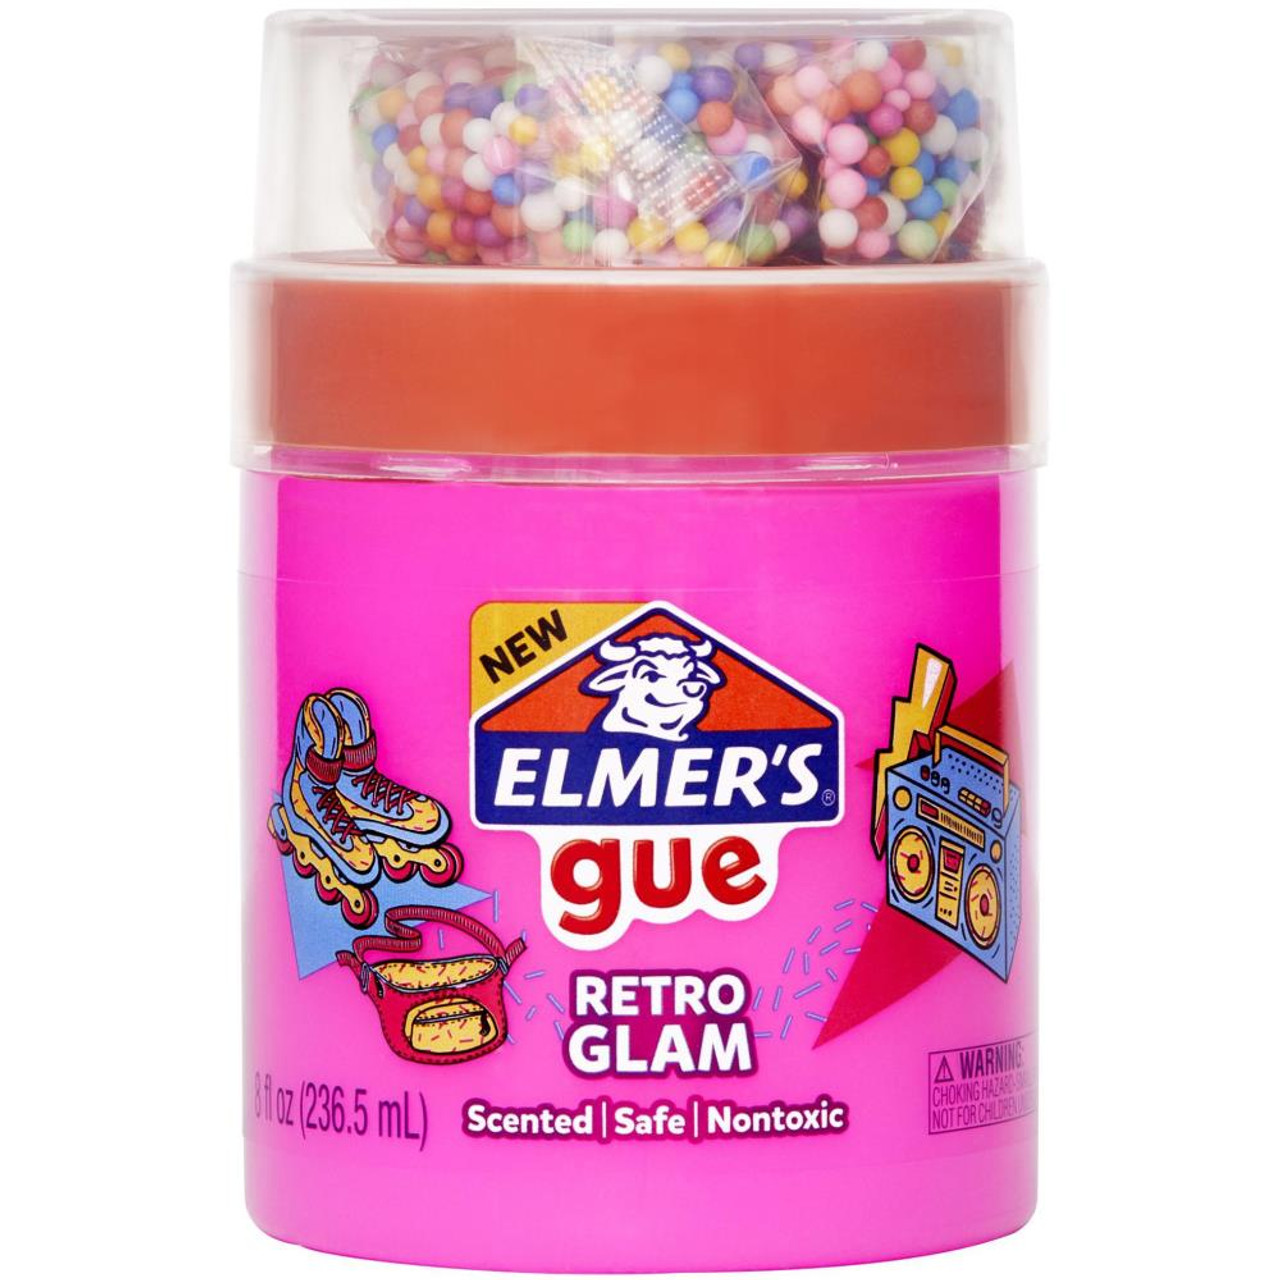 Elmer's Gue Premade, Retro Flash Slime Kit, 24 Oz, Assorted Colors